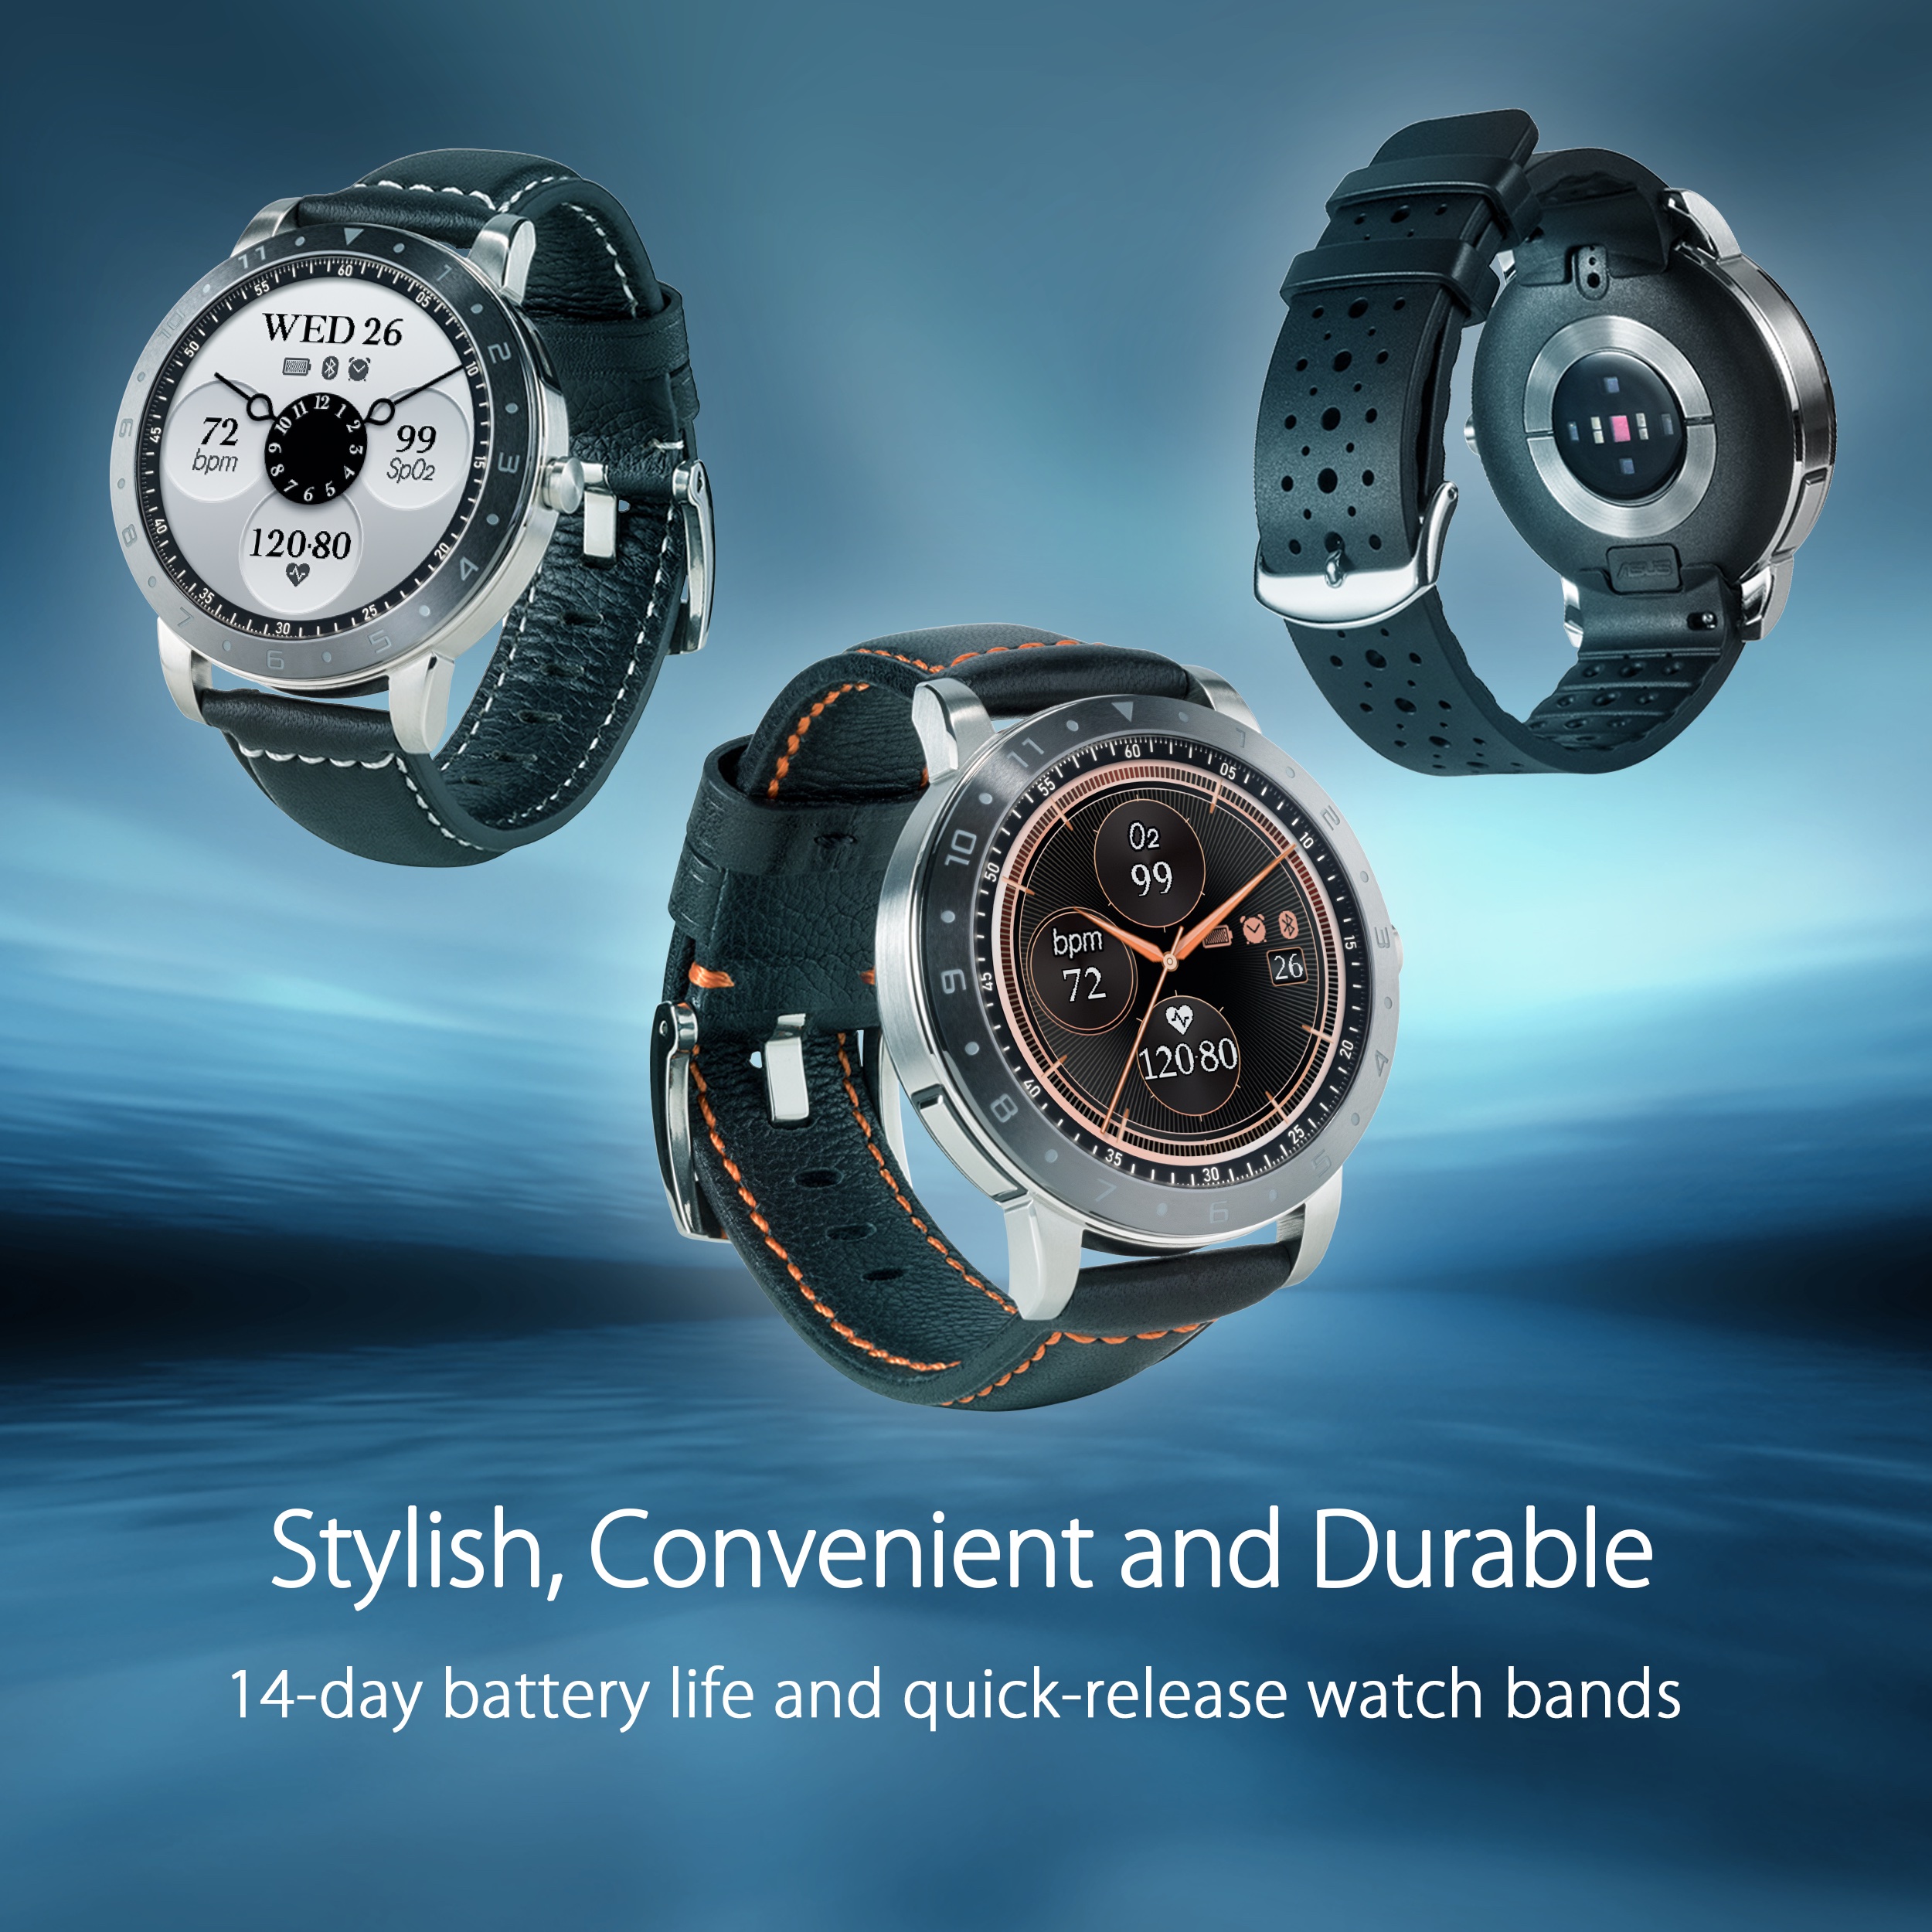 ASUS giới thiệu smartwatch VivoWatch 5, đồng hồ đeo tay đo được huyết áp